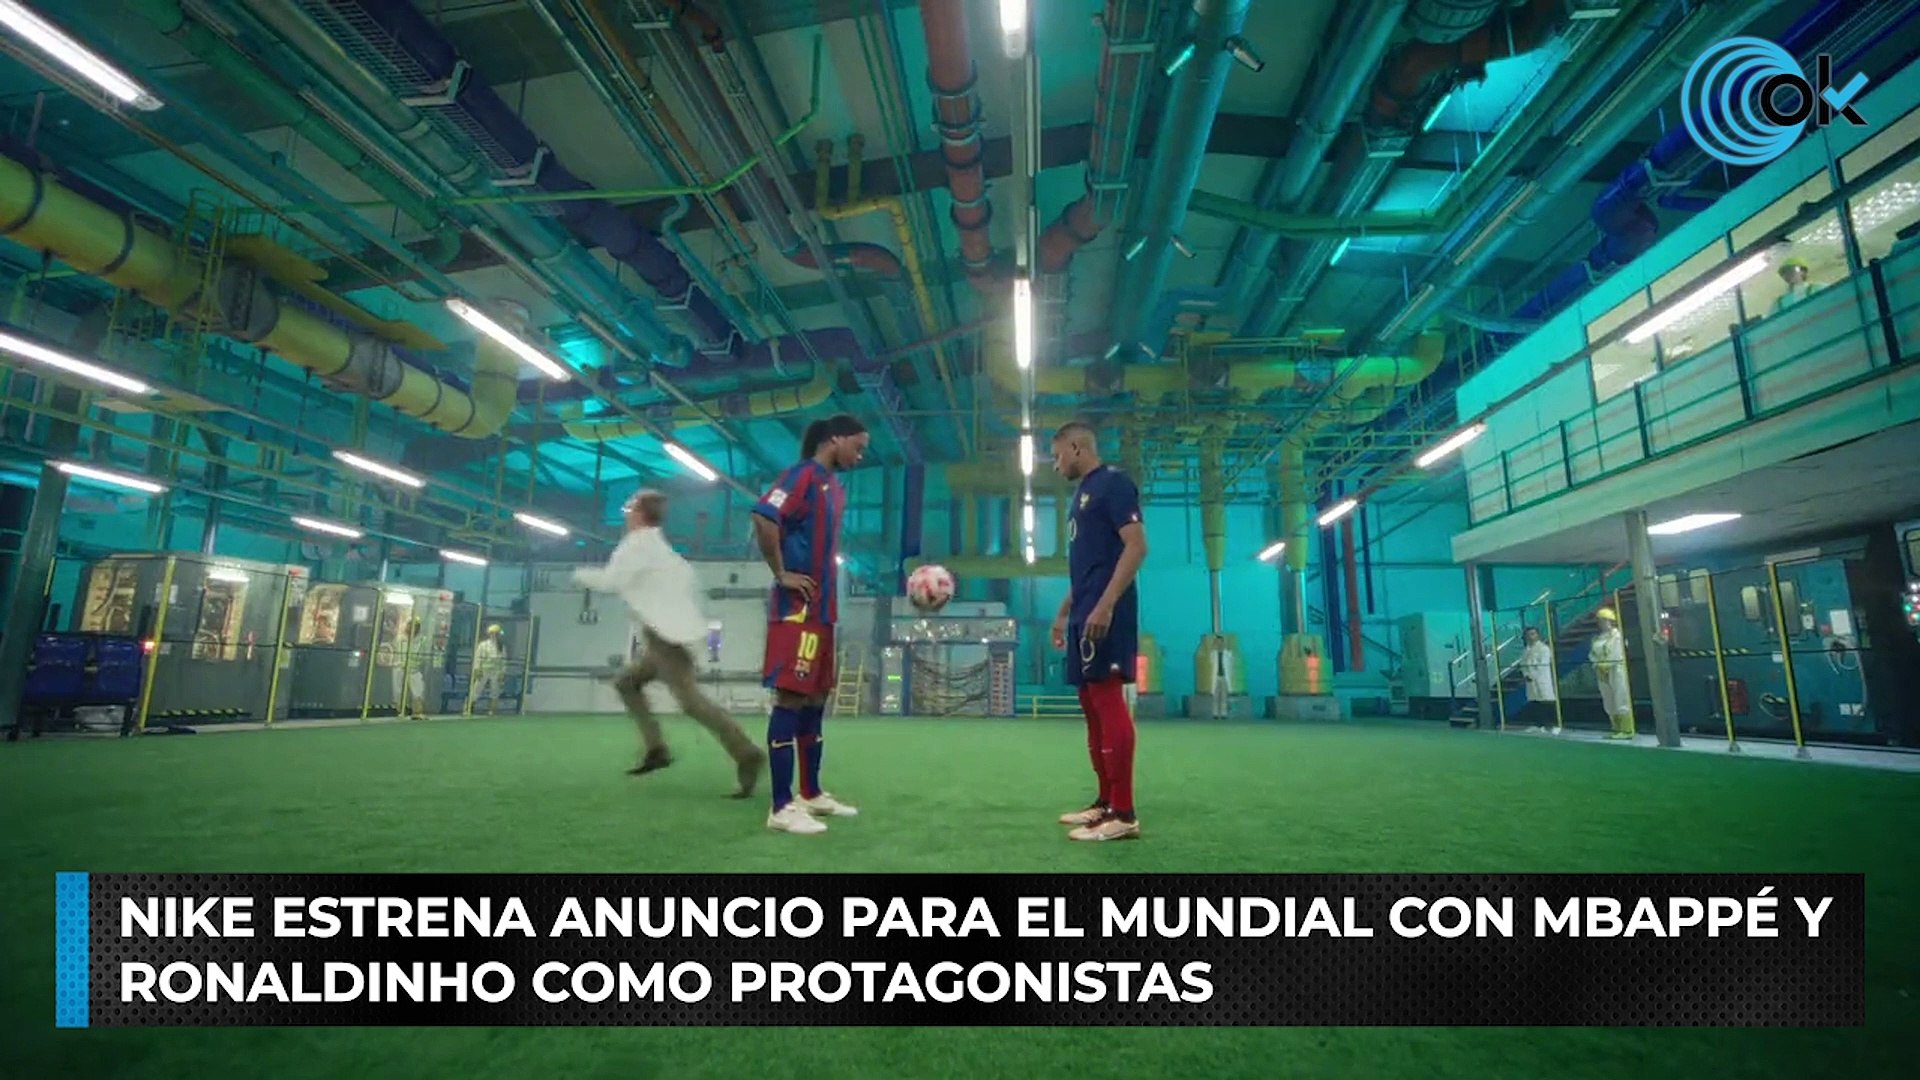 NIKE estrena anuncio para el Mundial con Mbappé y Ronaldinho como  protagonistas - Vídeo Dailymotion